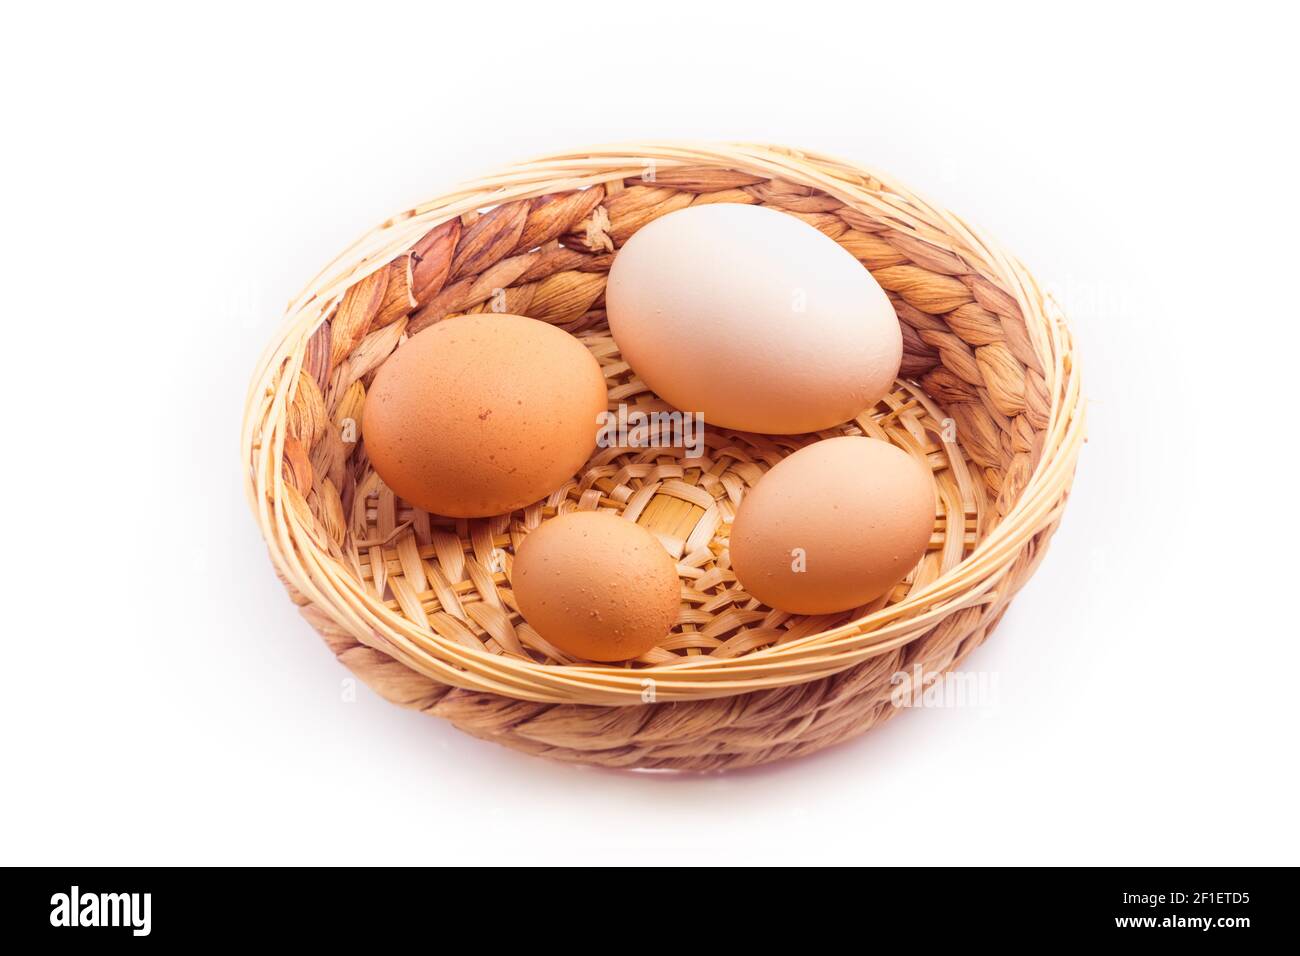 huevos - cuatro huevos de pollo de diferentes tamaños en una pequeña cesta de mimbre, aislados sobre fondo blanco Foto de stock